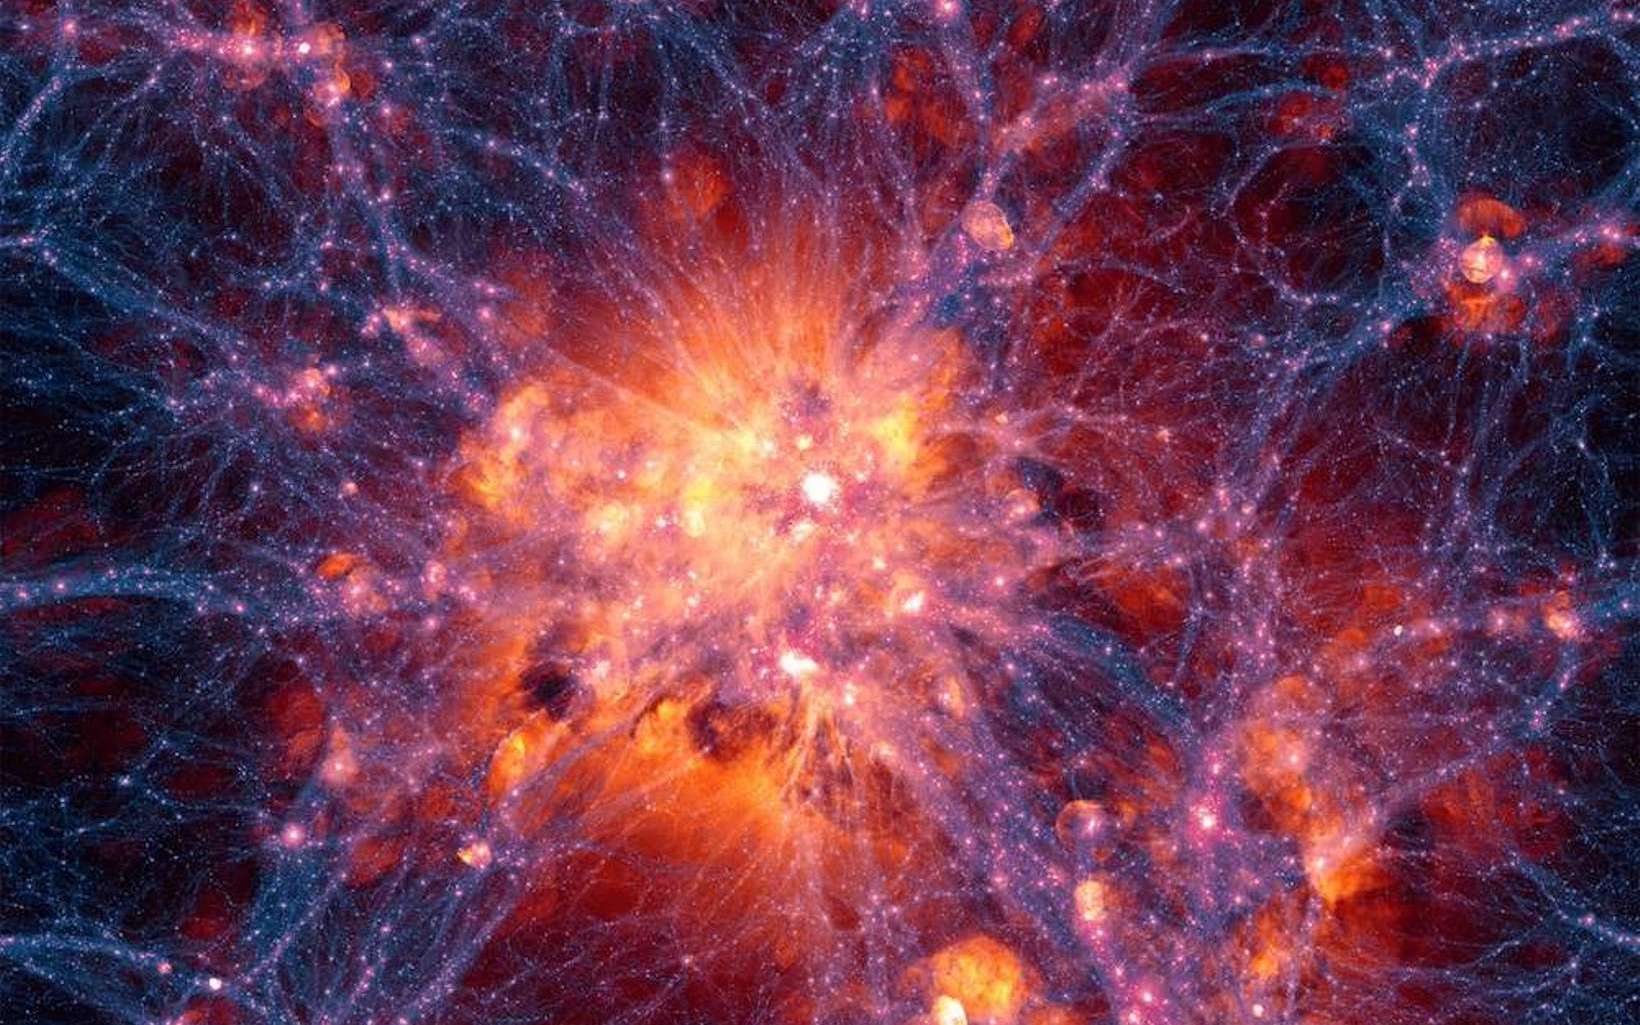 Projection à grande échelle centrée sur l’amas de galaxies le plus massif dans la simulation Illustris. Elle montre la distribution de la matière noire en filaments (bleu, violet et pourpre), laquelle interagit gravitationnellement avec la matière ordinaire et favorise la formation des amas de galaxies. Les enveloppes de gaz teintées de rouge, rose ou orange sont principalement créées par l’explosion de supernovae ou les jets des trous noirs supermassifs. © Illustris Collaboration